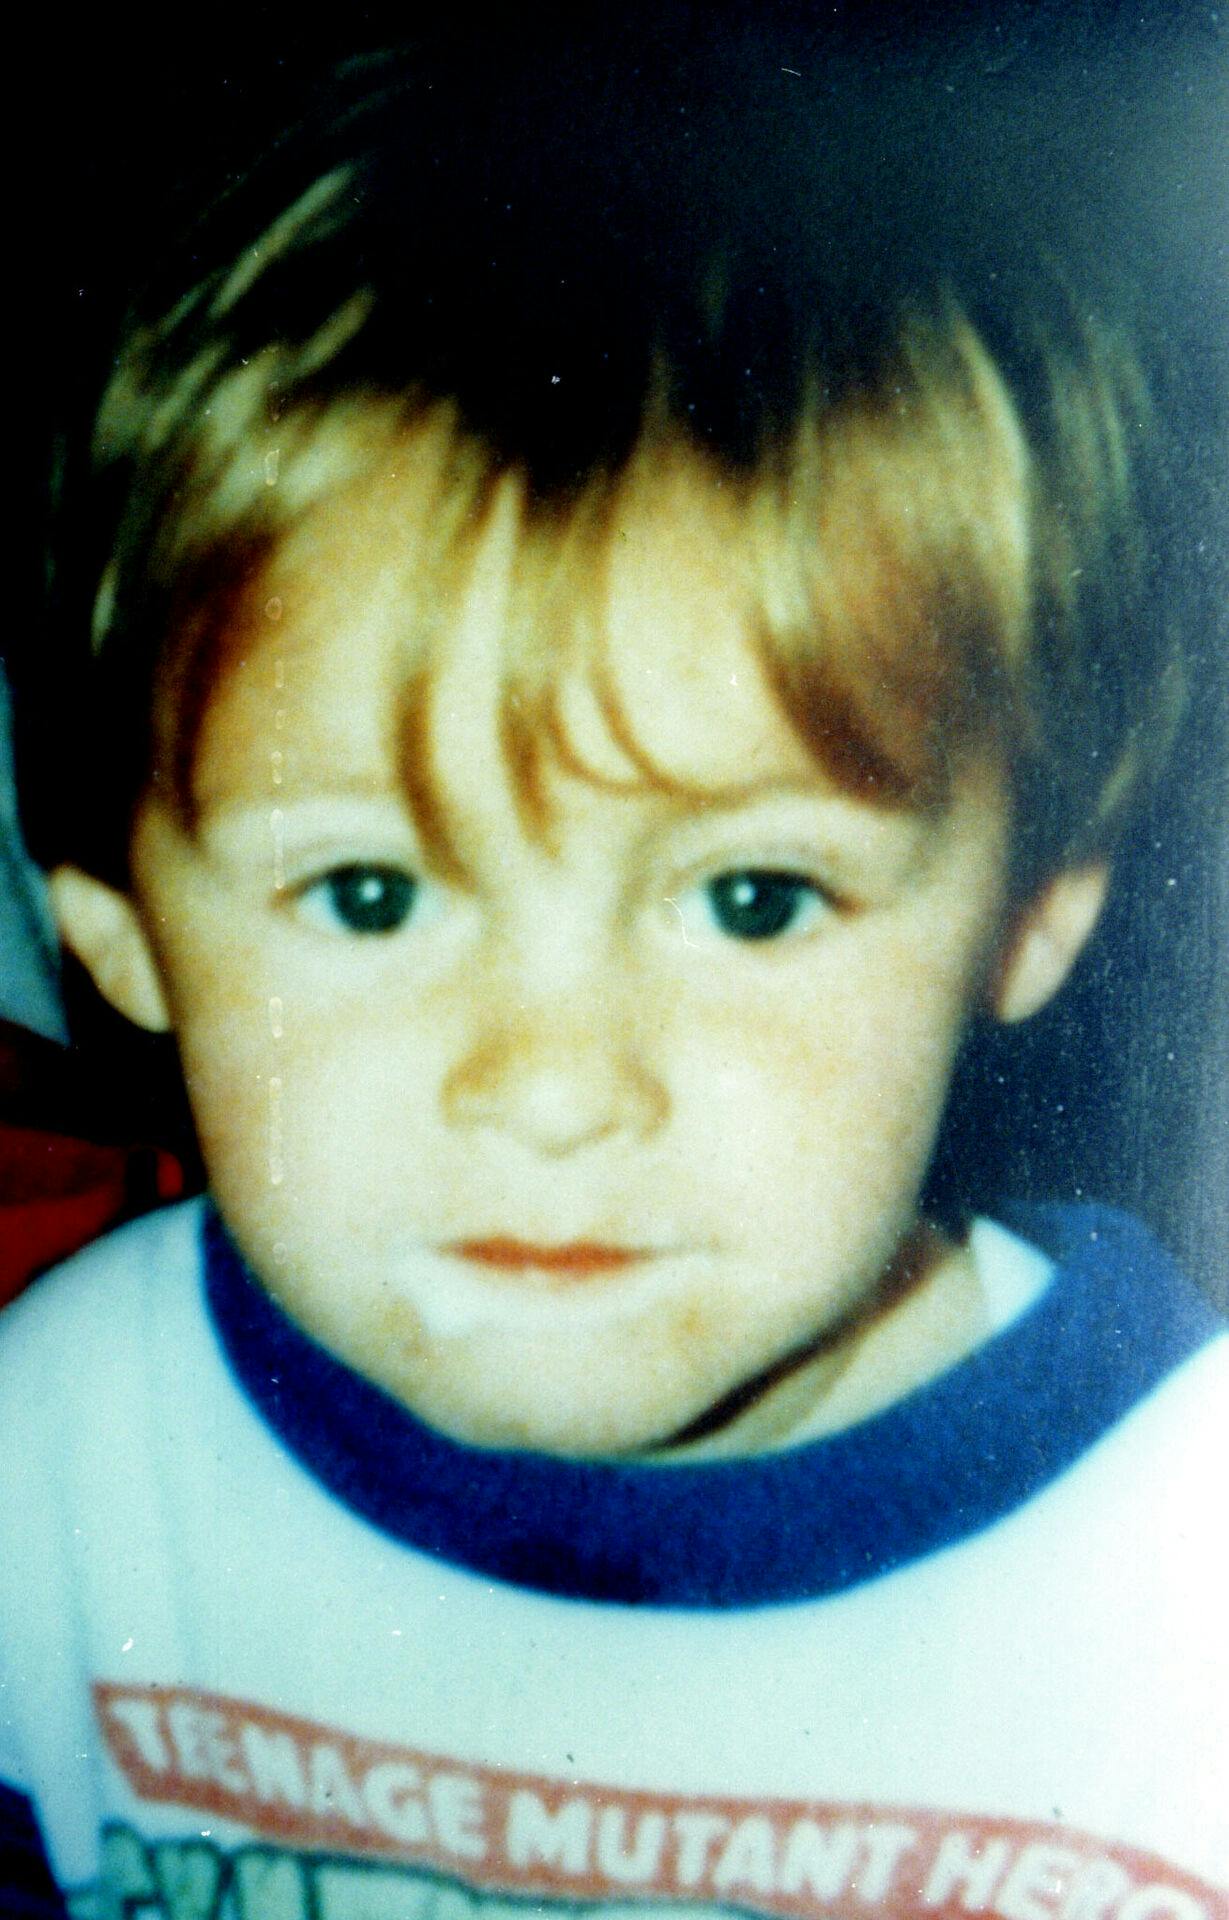 James Bulger var kun to år gammel, da han blev kidnappet, tortureret og myrdet.
